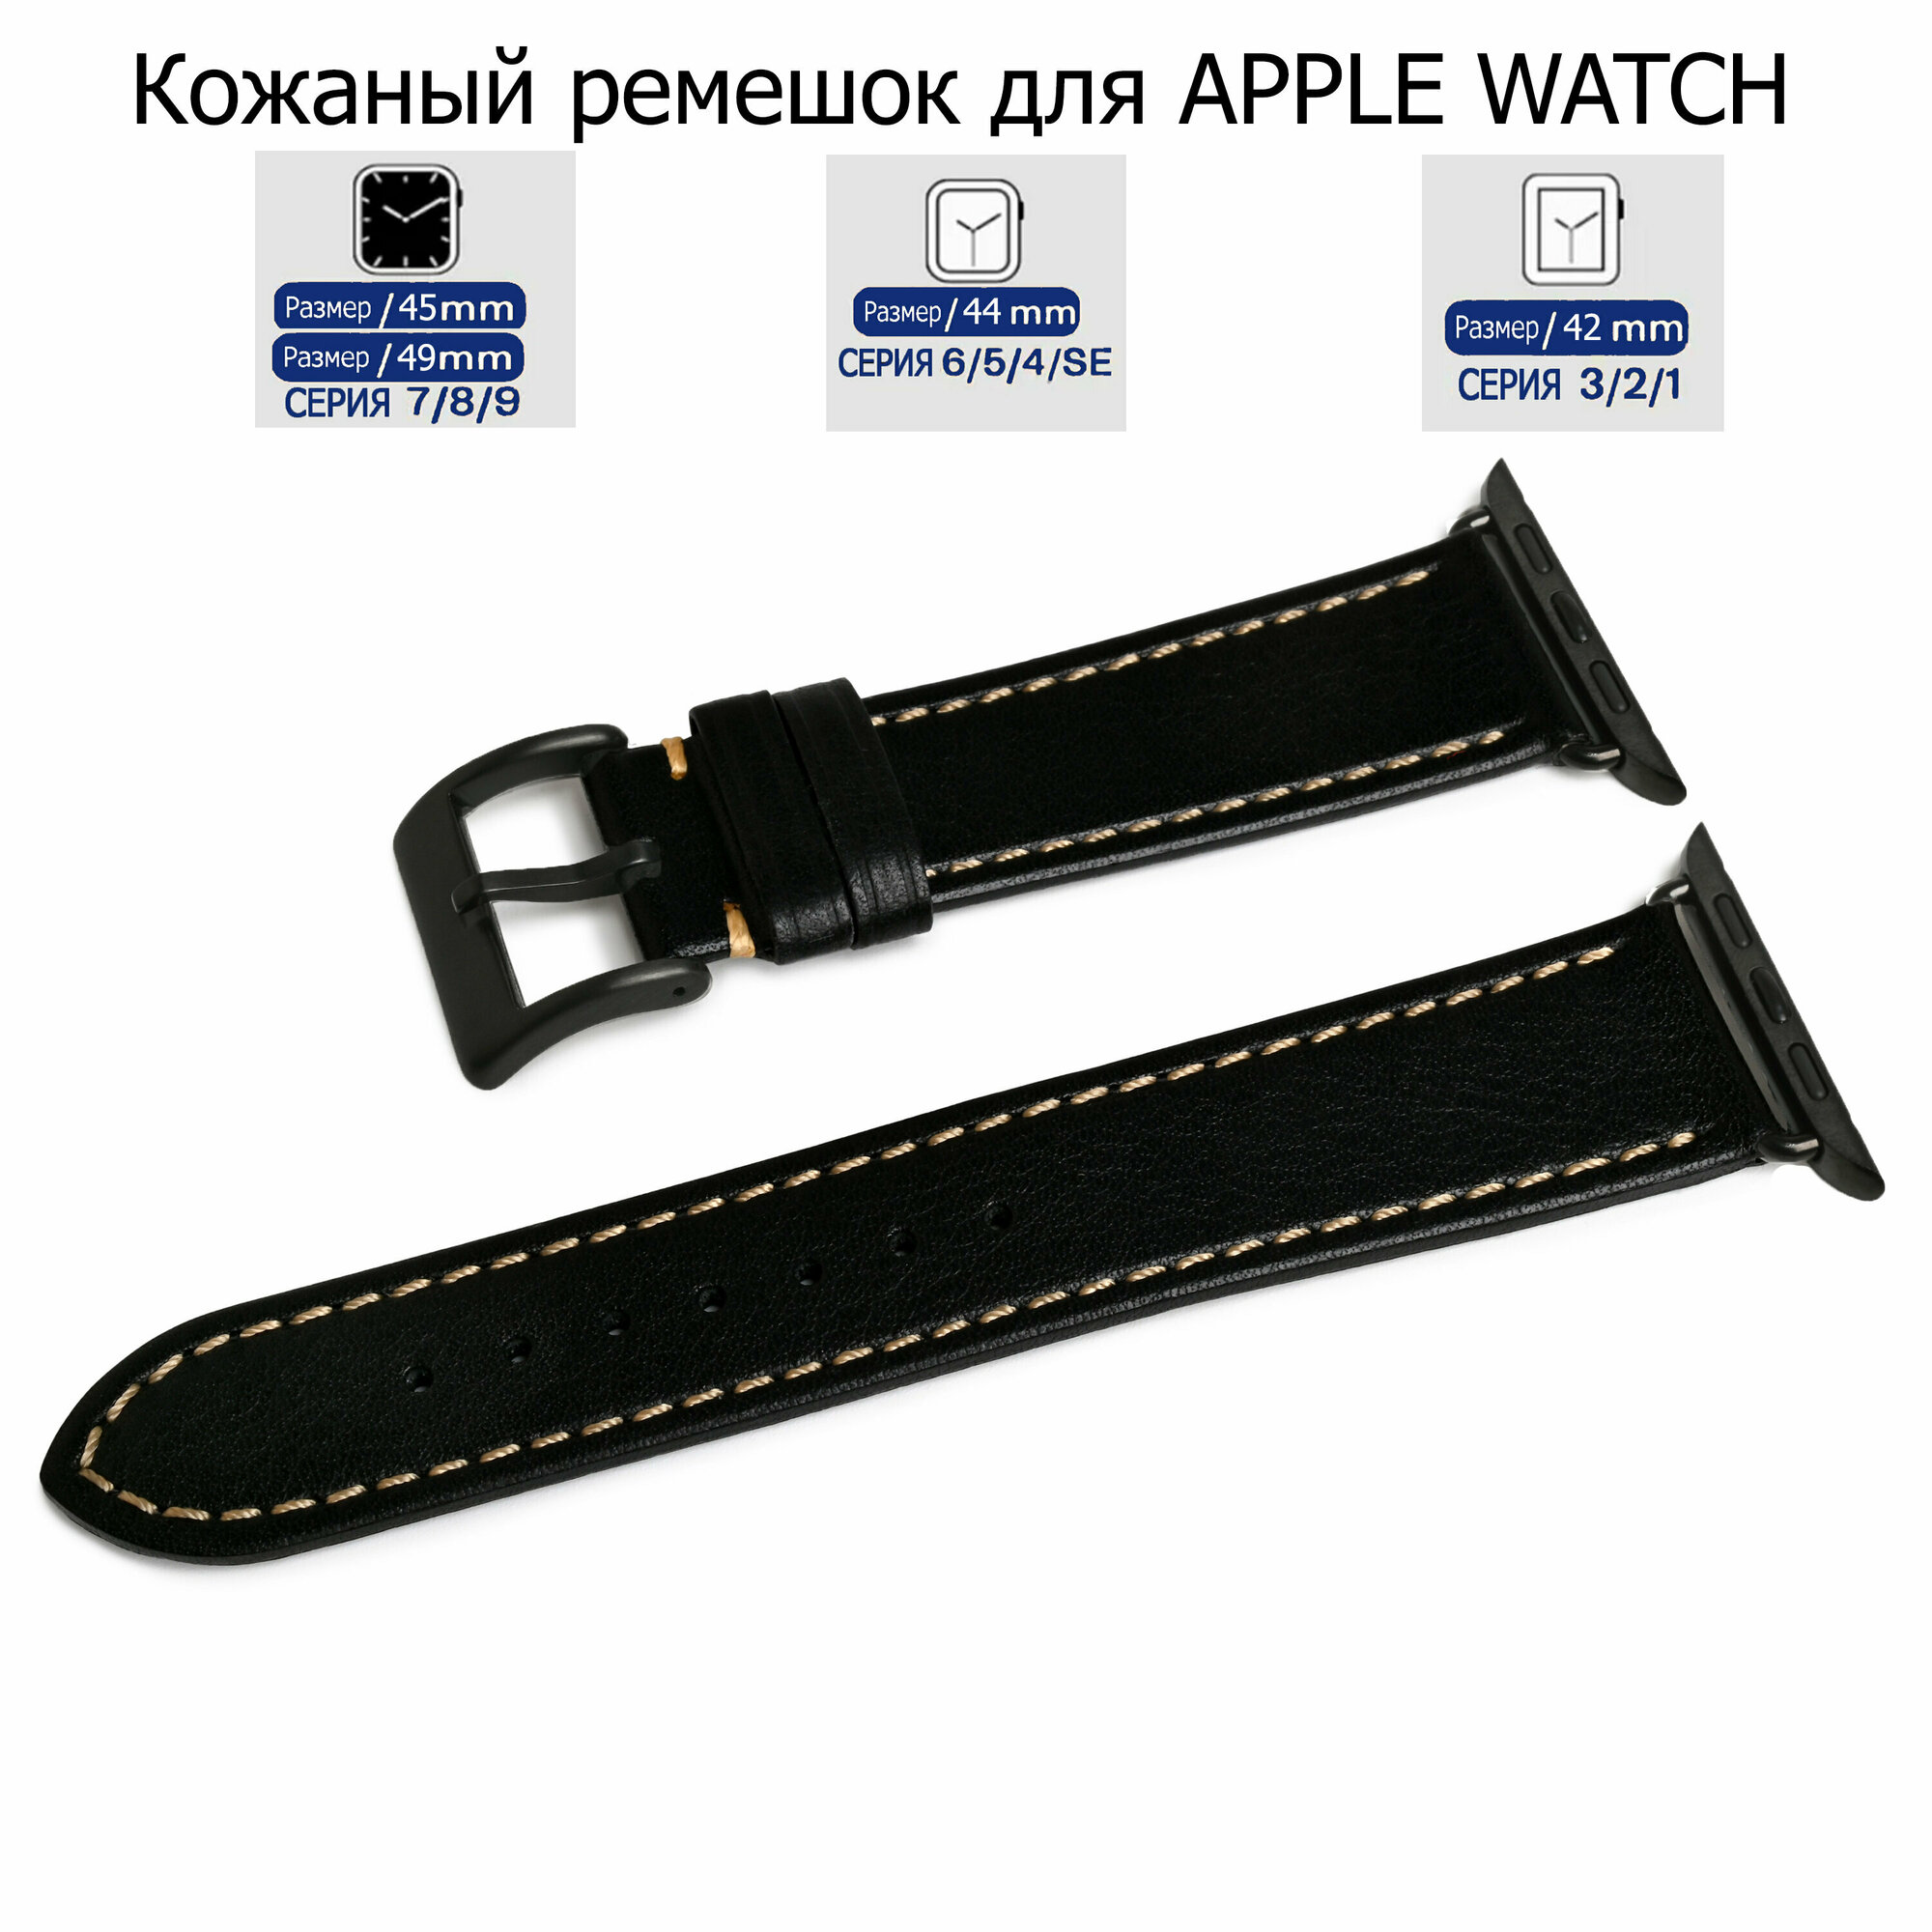 Ремешок для Apple Watch с диагональю 42/44/45/49 натуральная кожа черный, серая нитка, переходник черного цвета